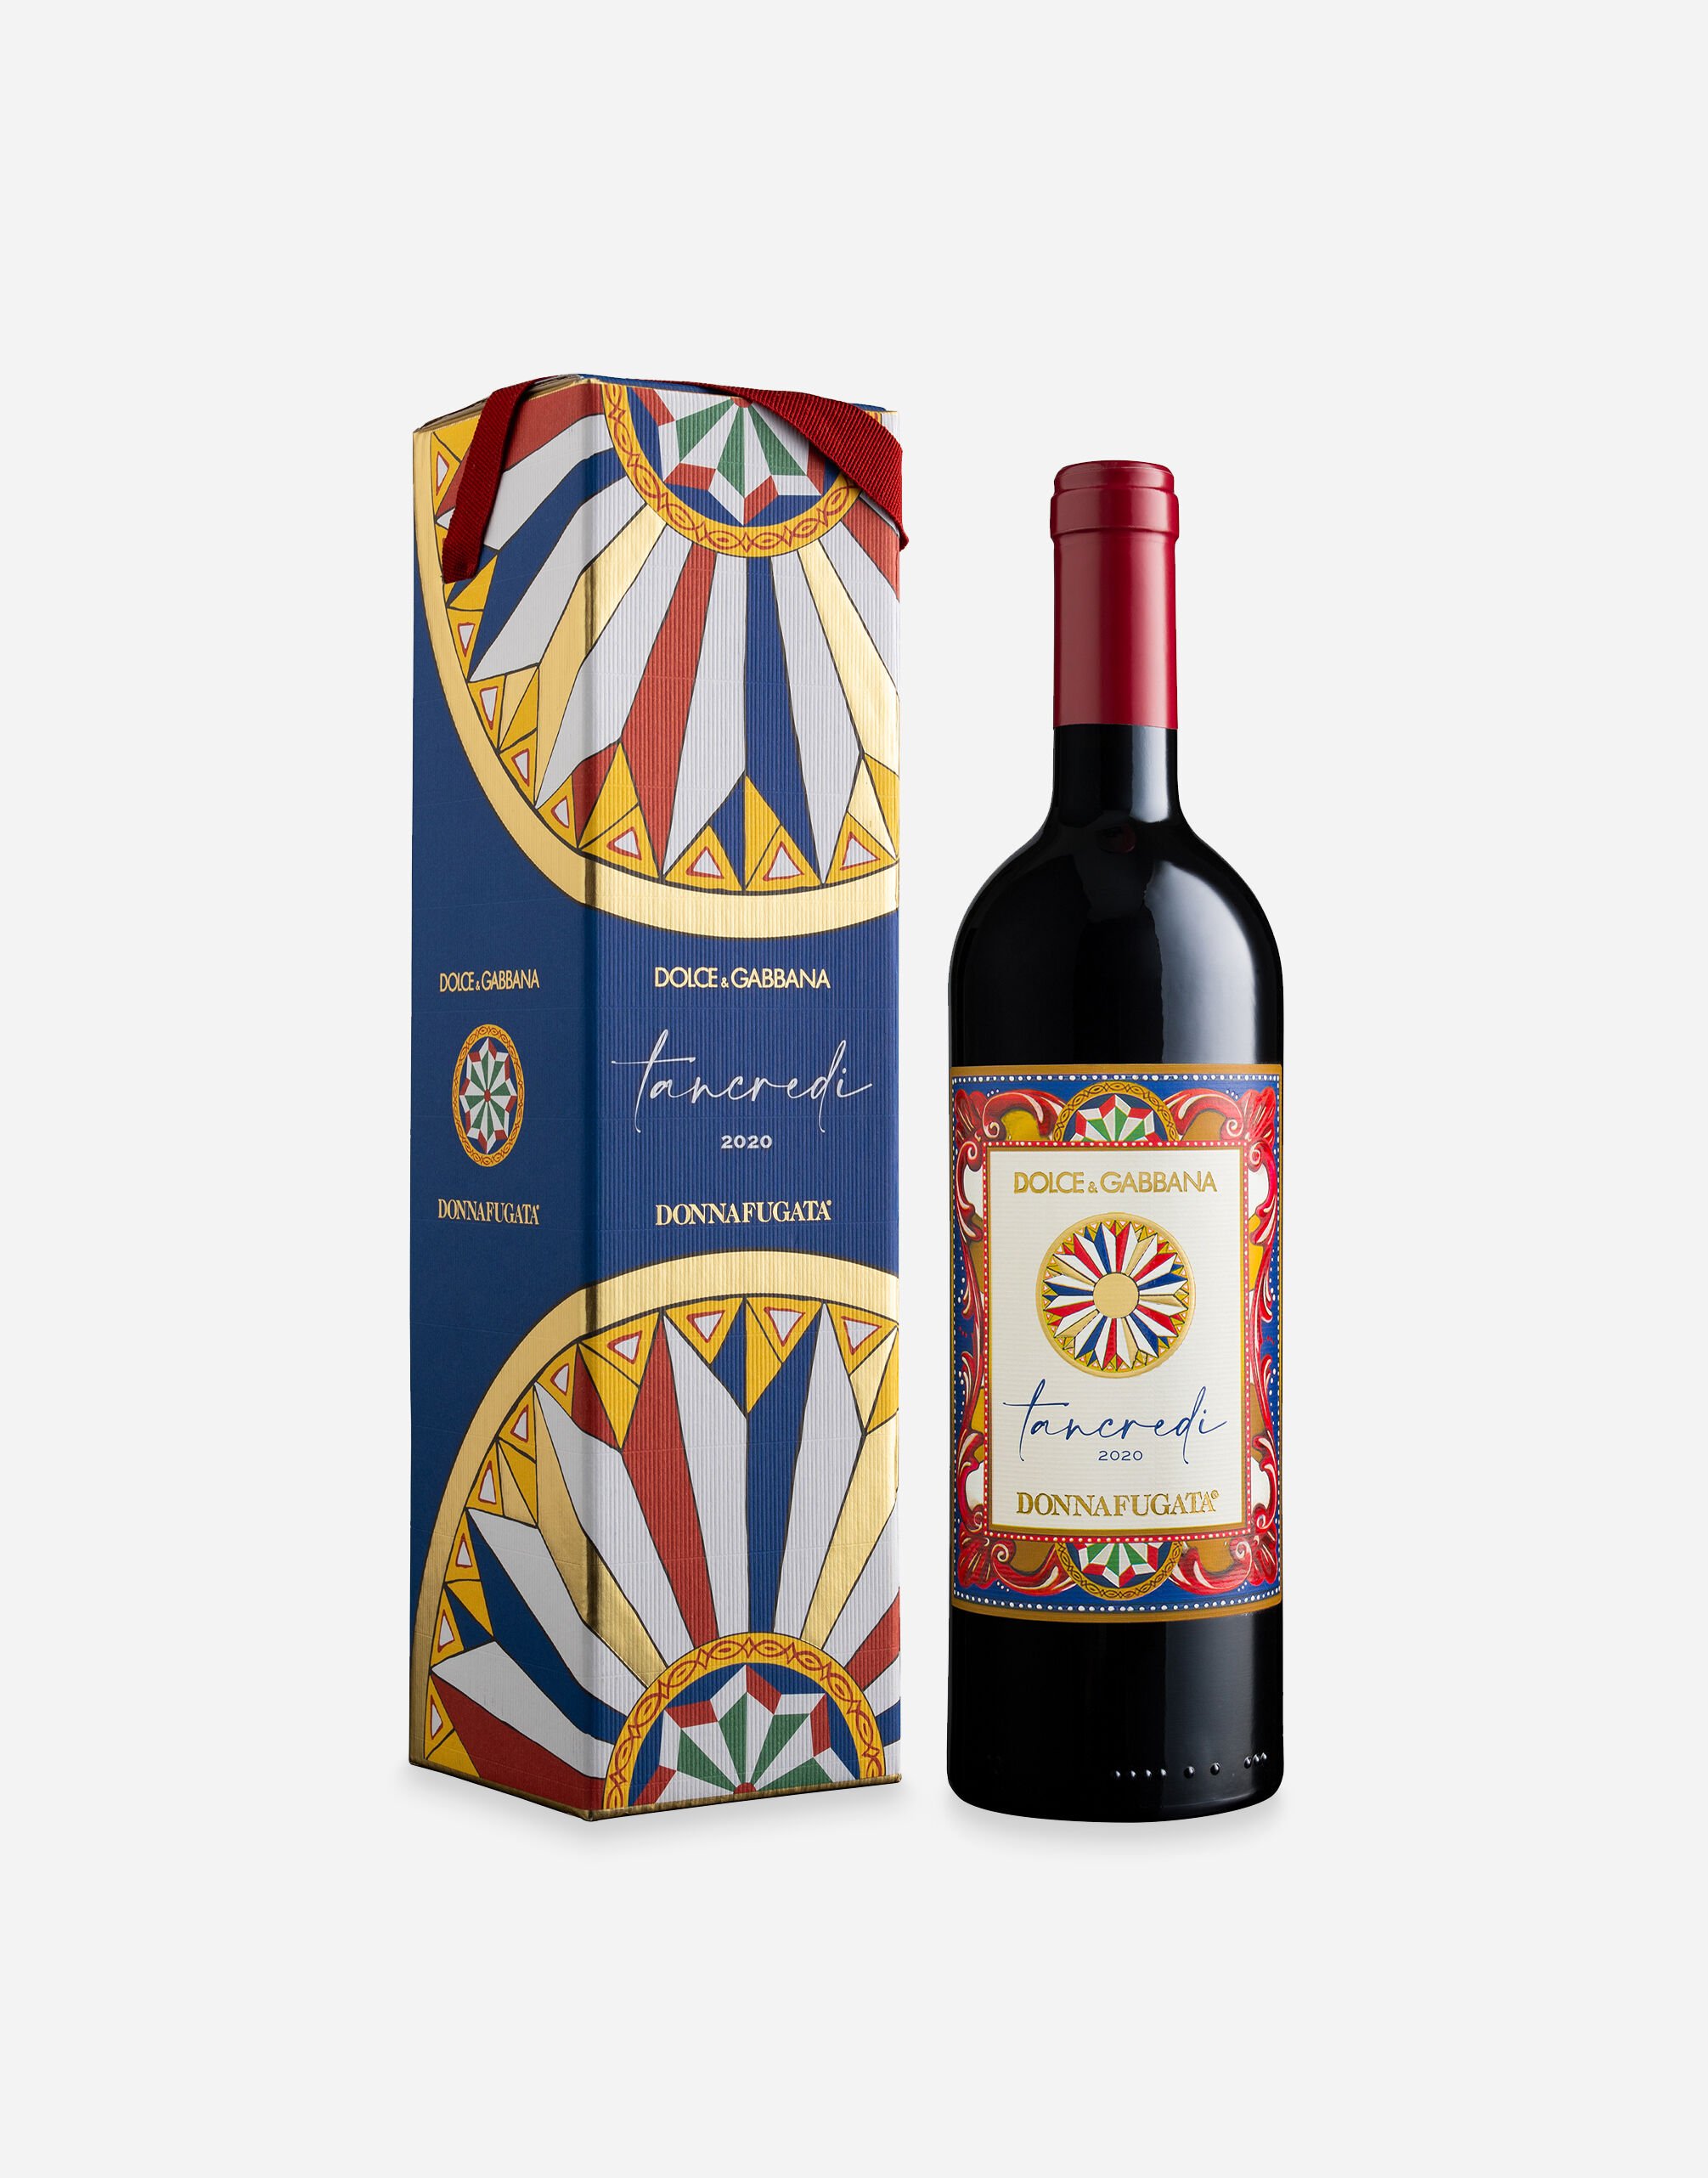 Dolce & Gabbana TANCREDI 2020 - Terre Siciliane IGT Tinto (0,75 l) Caja con una unidad Multicolor PW0419RES15